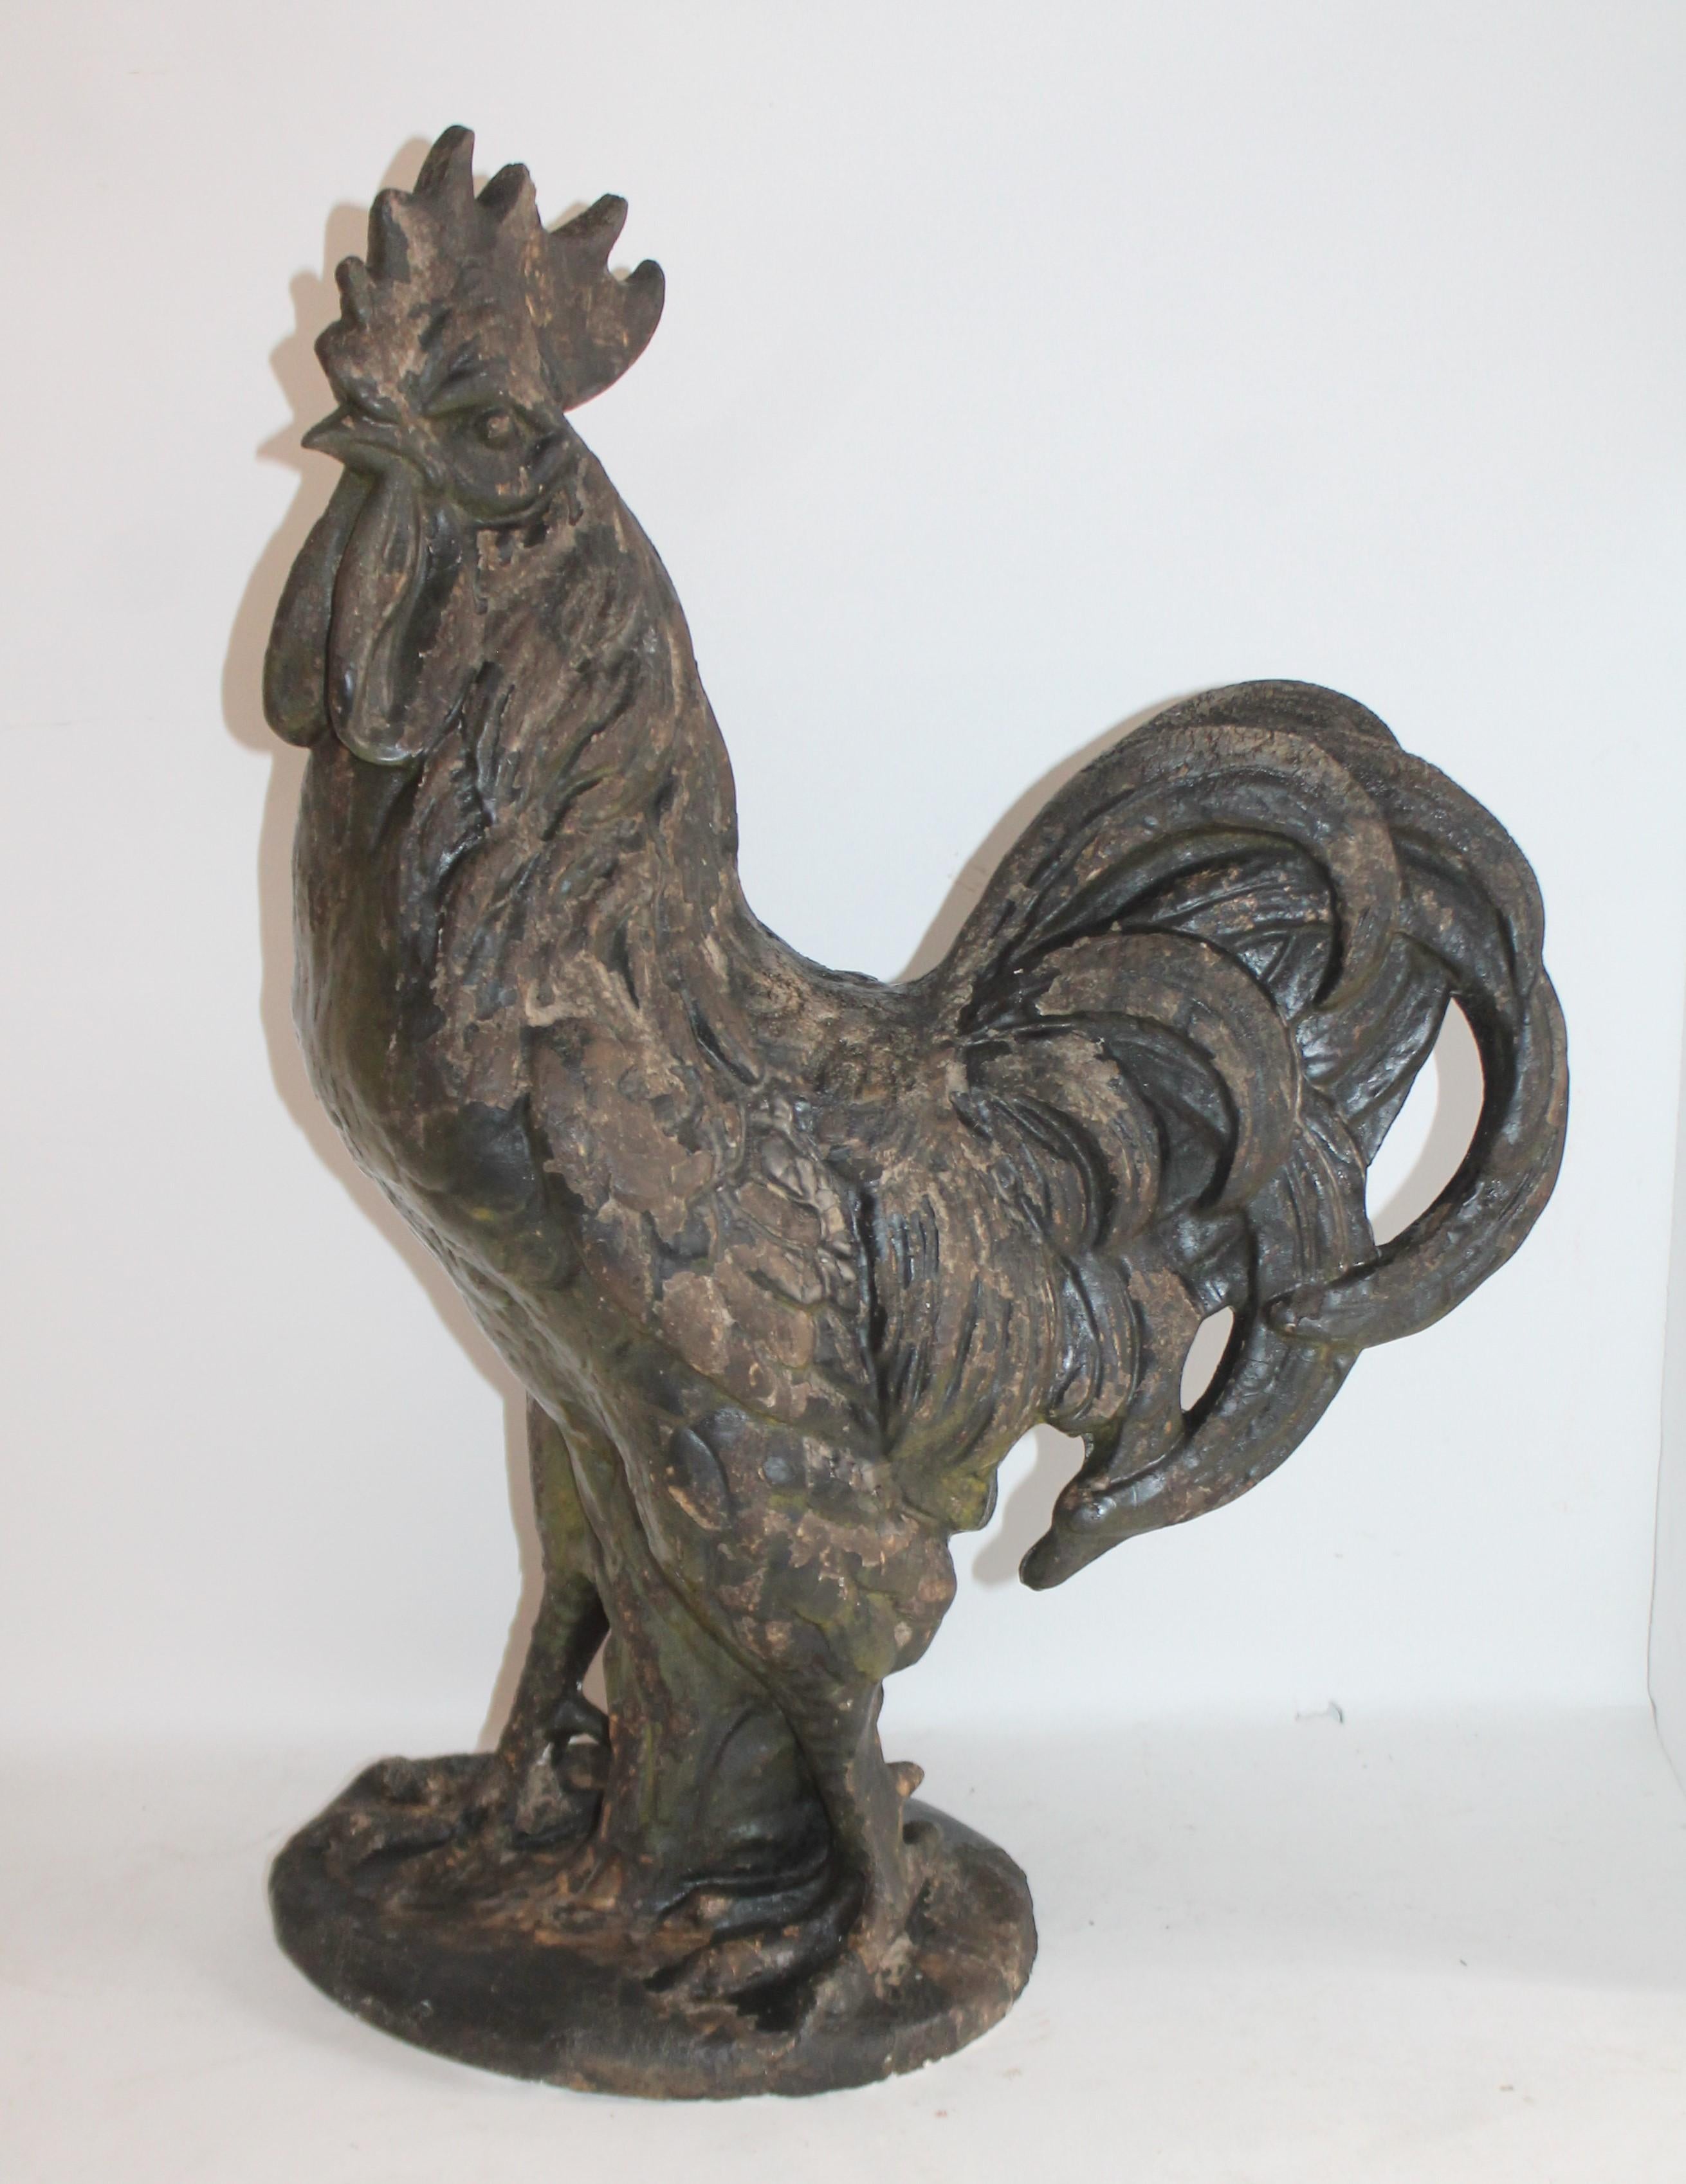 Ce coq folklorique est fait de plâtre ou de céramique et est idéal pour un porche de ferme ou une cour. Il s'agit d'un coq lourd peint en détresse.